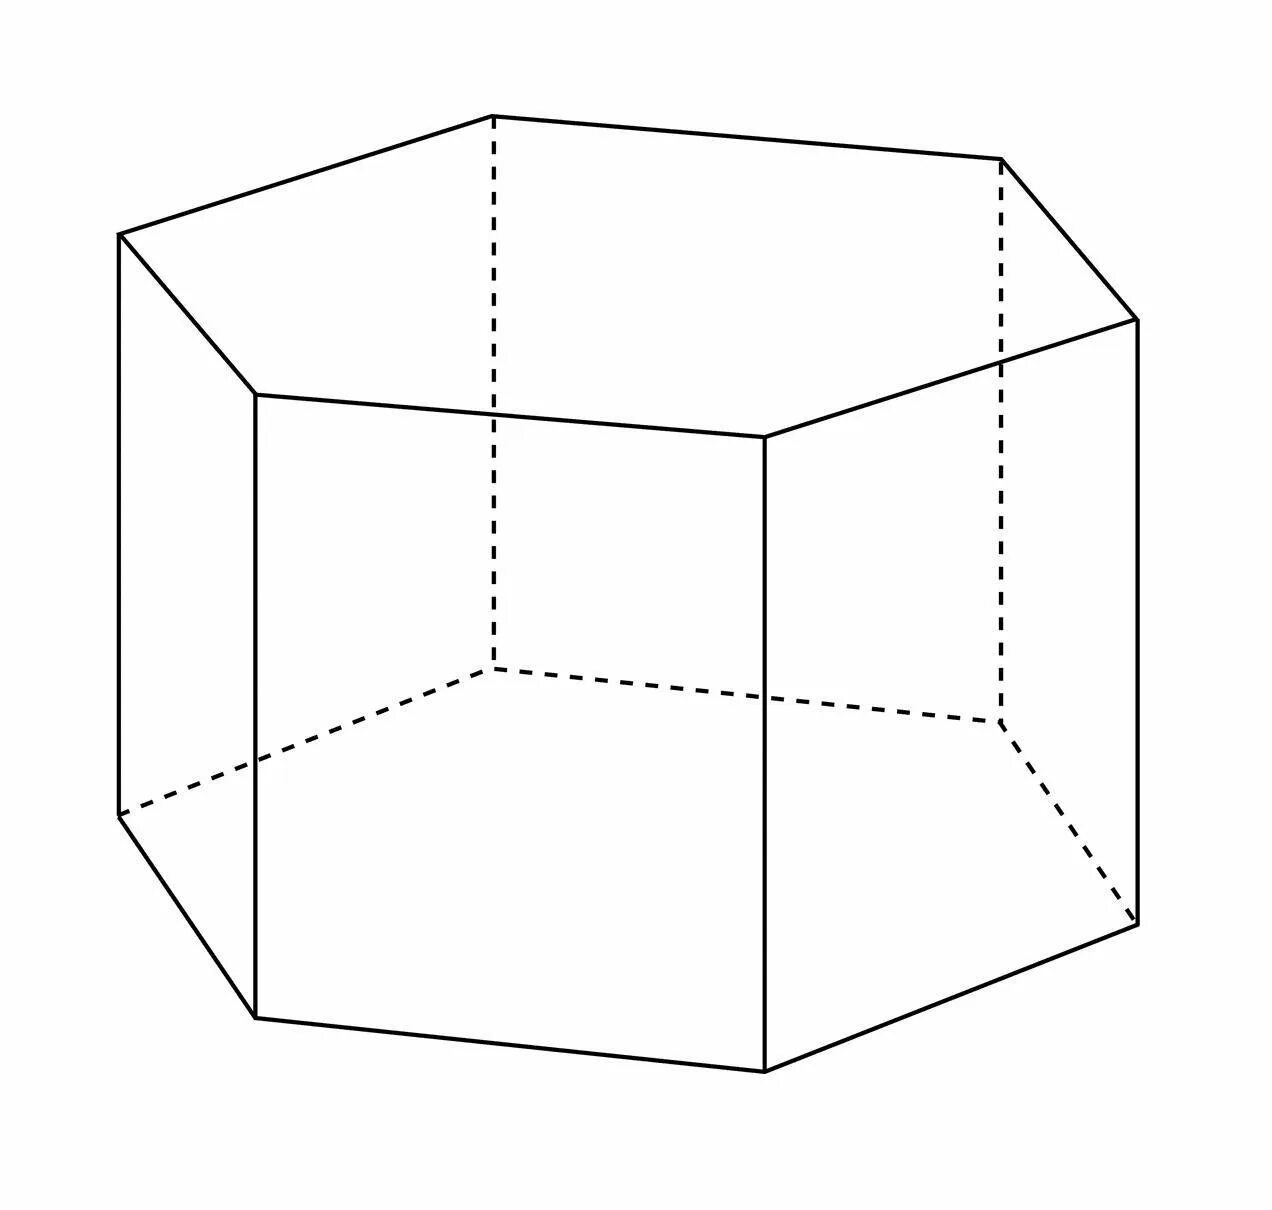 Изобразите правильную шестиугольную призму. 6 Угольная Призма. Шестиугольная Призма. Правильная шестиугольная Призма. Правильная шестигранная Призма.